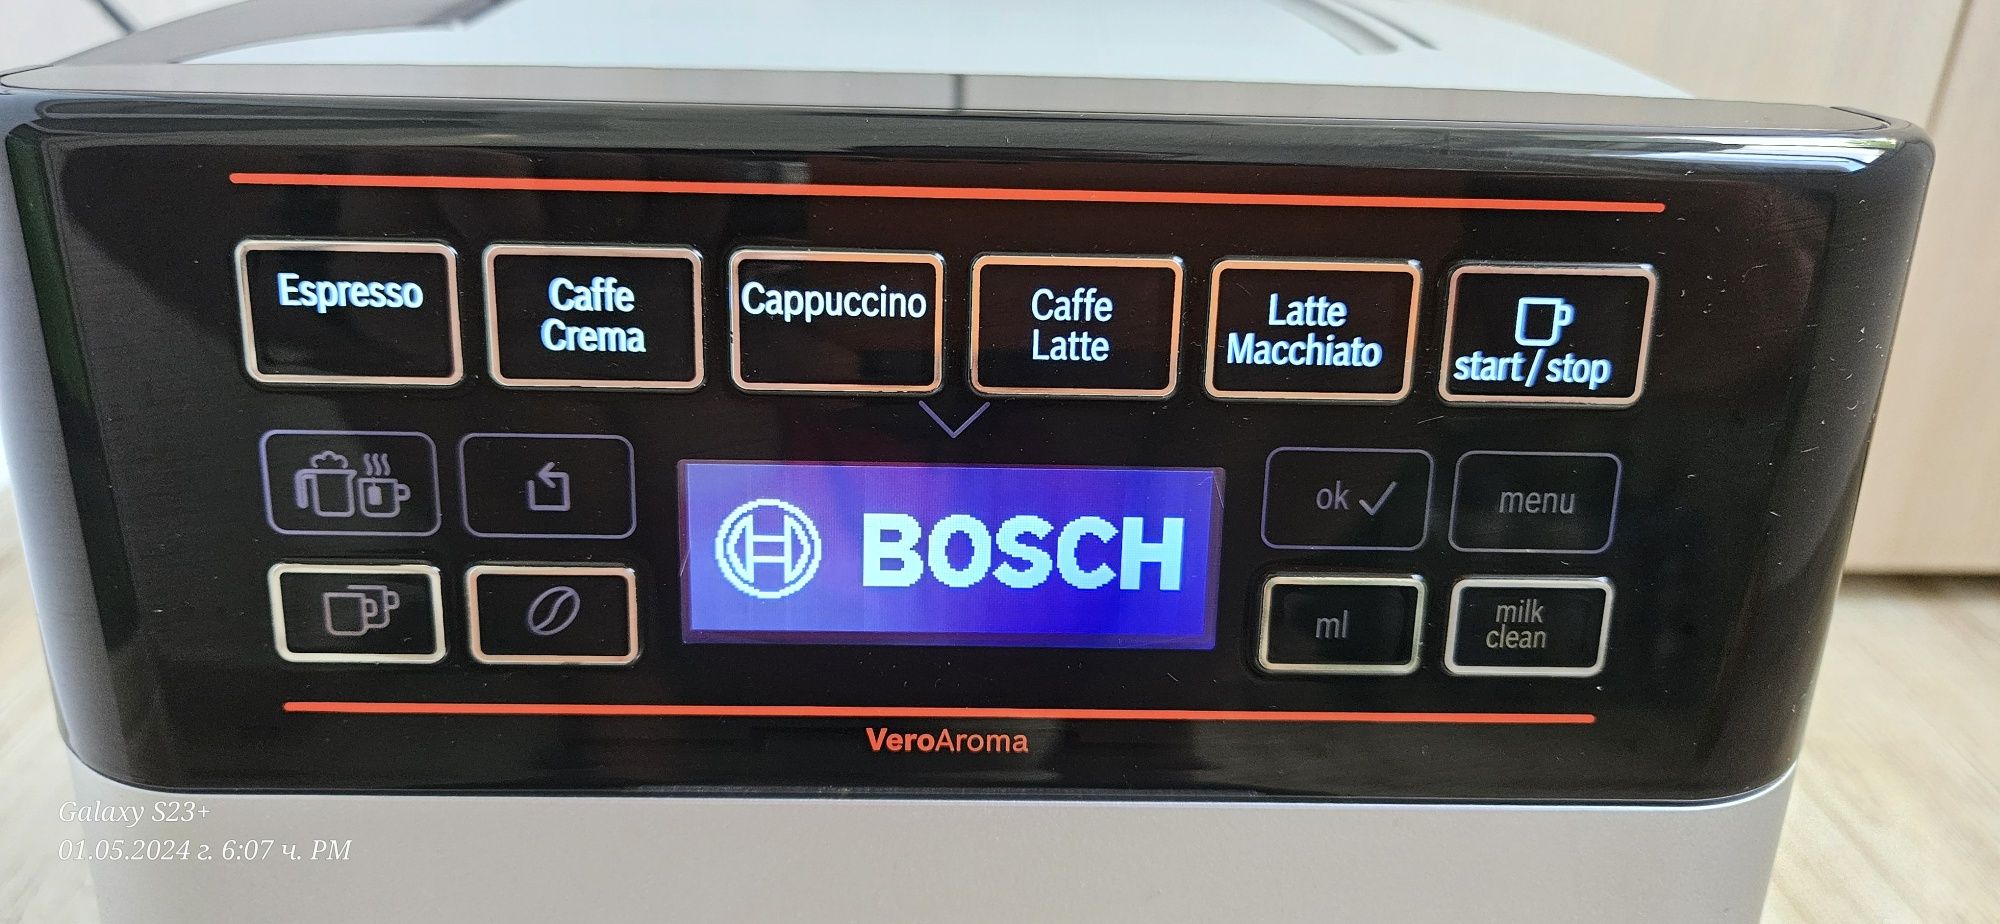 Кафе машина Bosch veroaroma  кафе робот